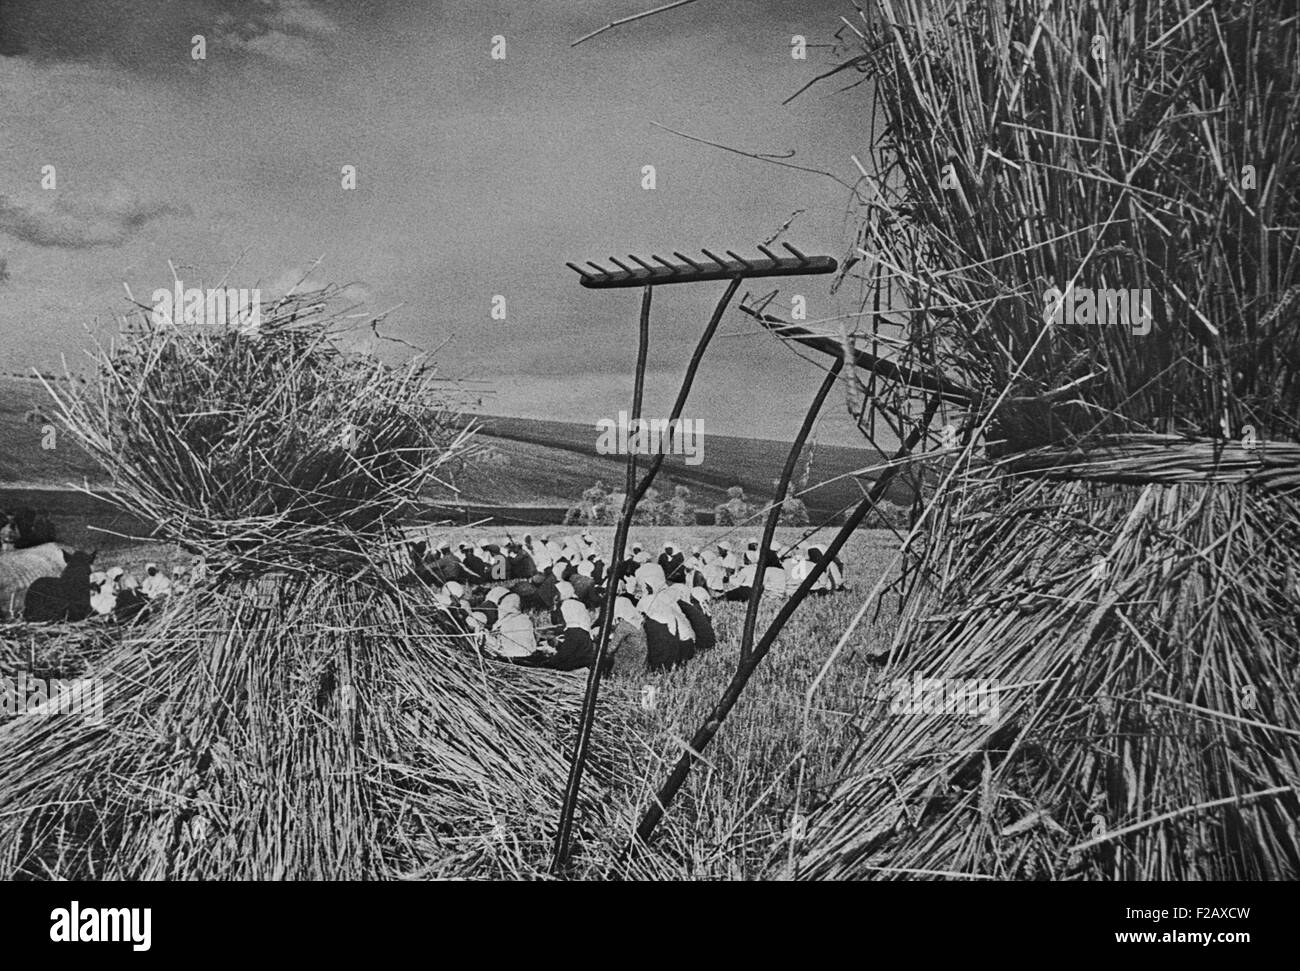 L'heure du dîner pendant la saison de la récolte sur une ferme collective communiste. Plusieurs dizaines de femmes siègent à un champ, à scène encadrée par des faisceaux de foin et de râteaux. Ca. (1935-40). Près de Kiev, Ukraine, URSS. (BSLOC 2015 2 254) Banque D'Images